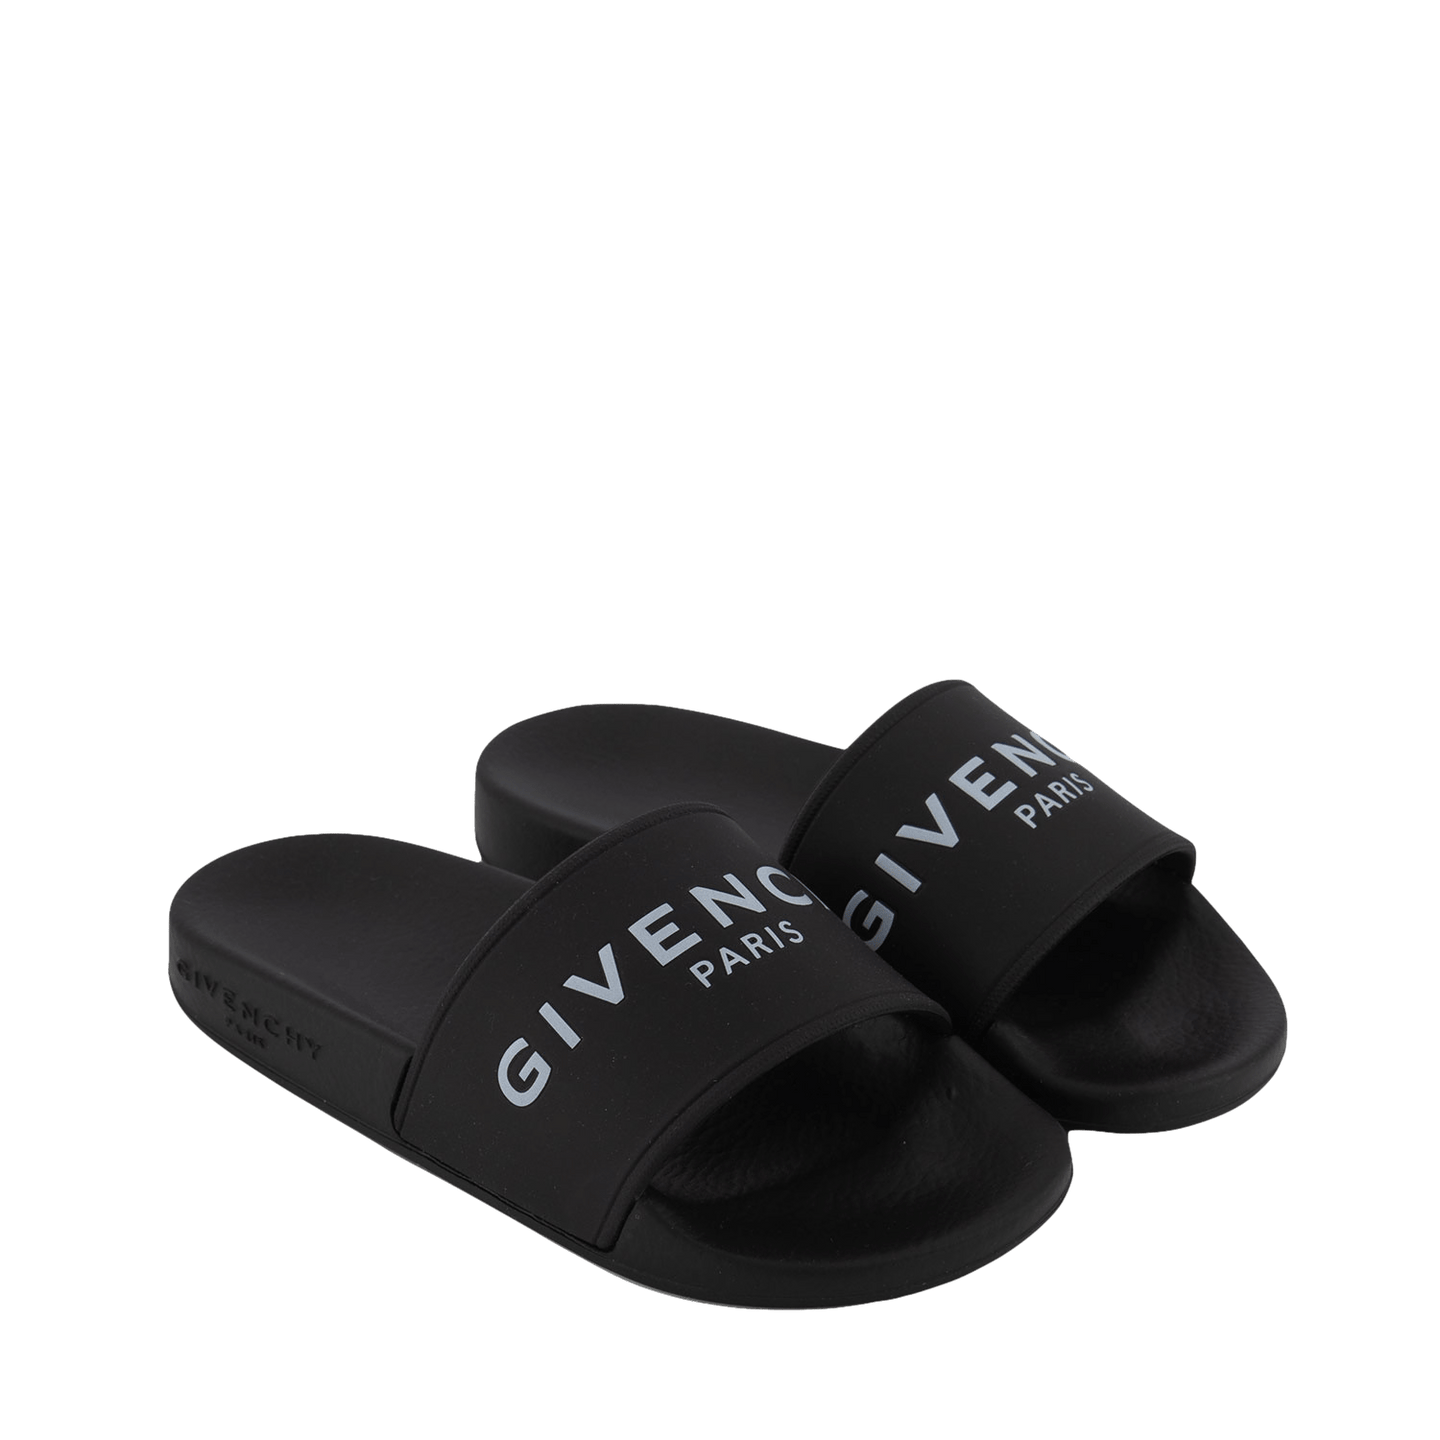 Givenchy Kids Unisex Flip-Flops Black